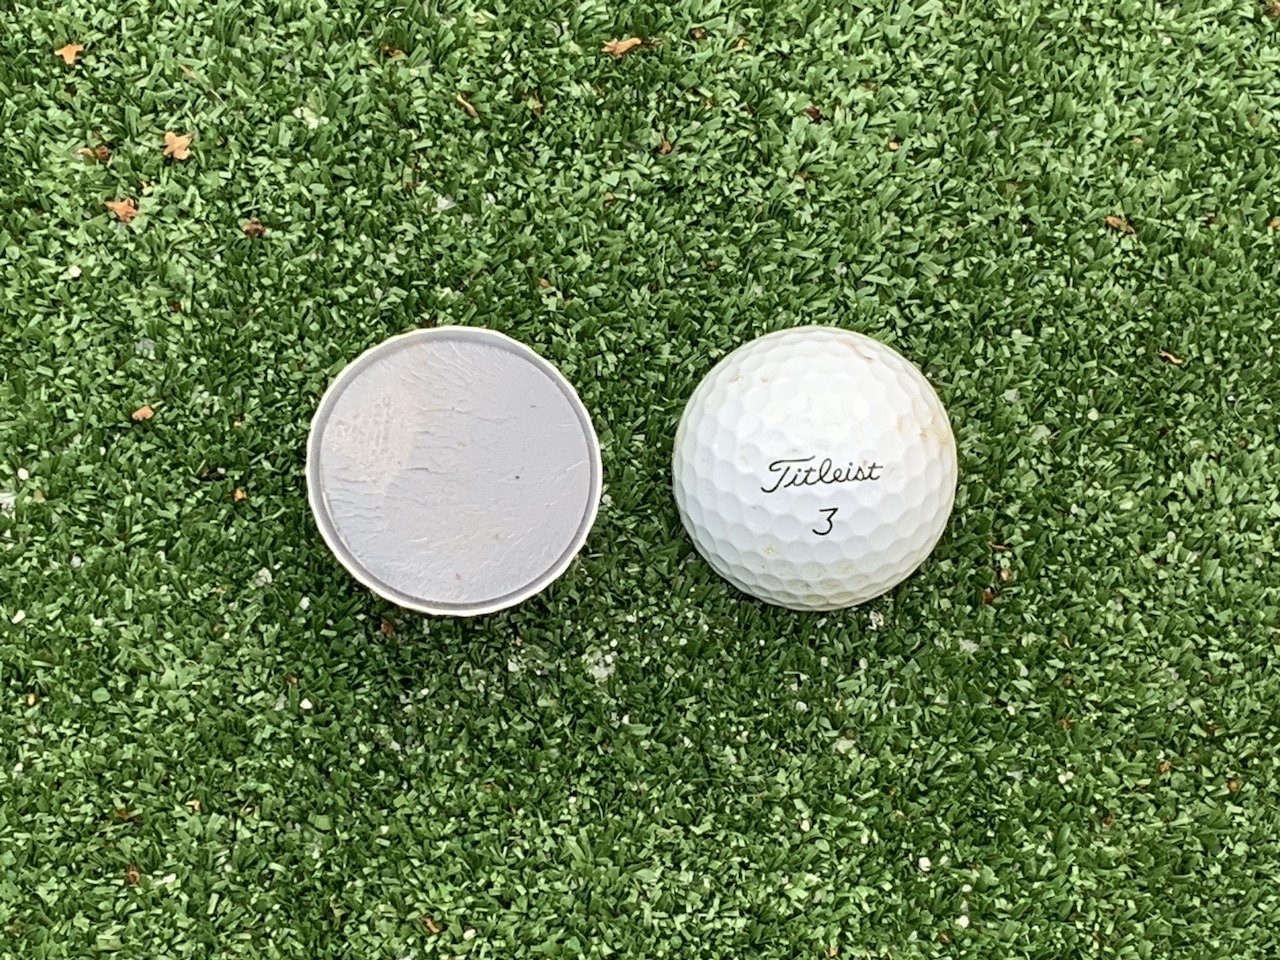 inside of golf ball on grass